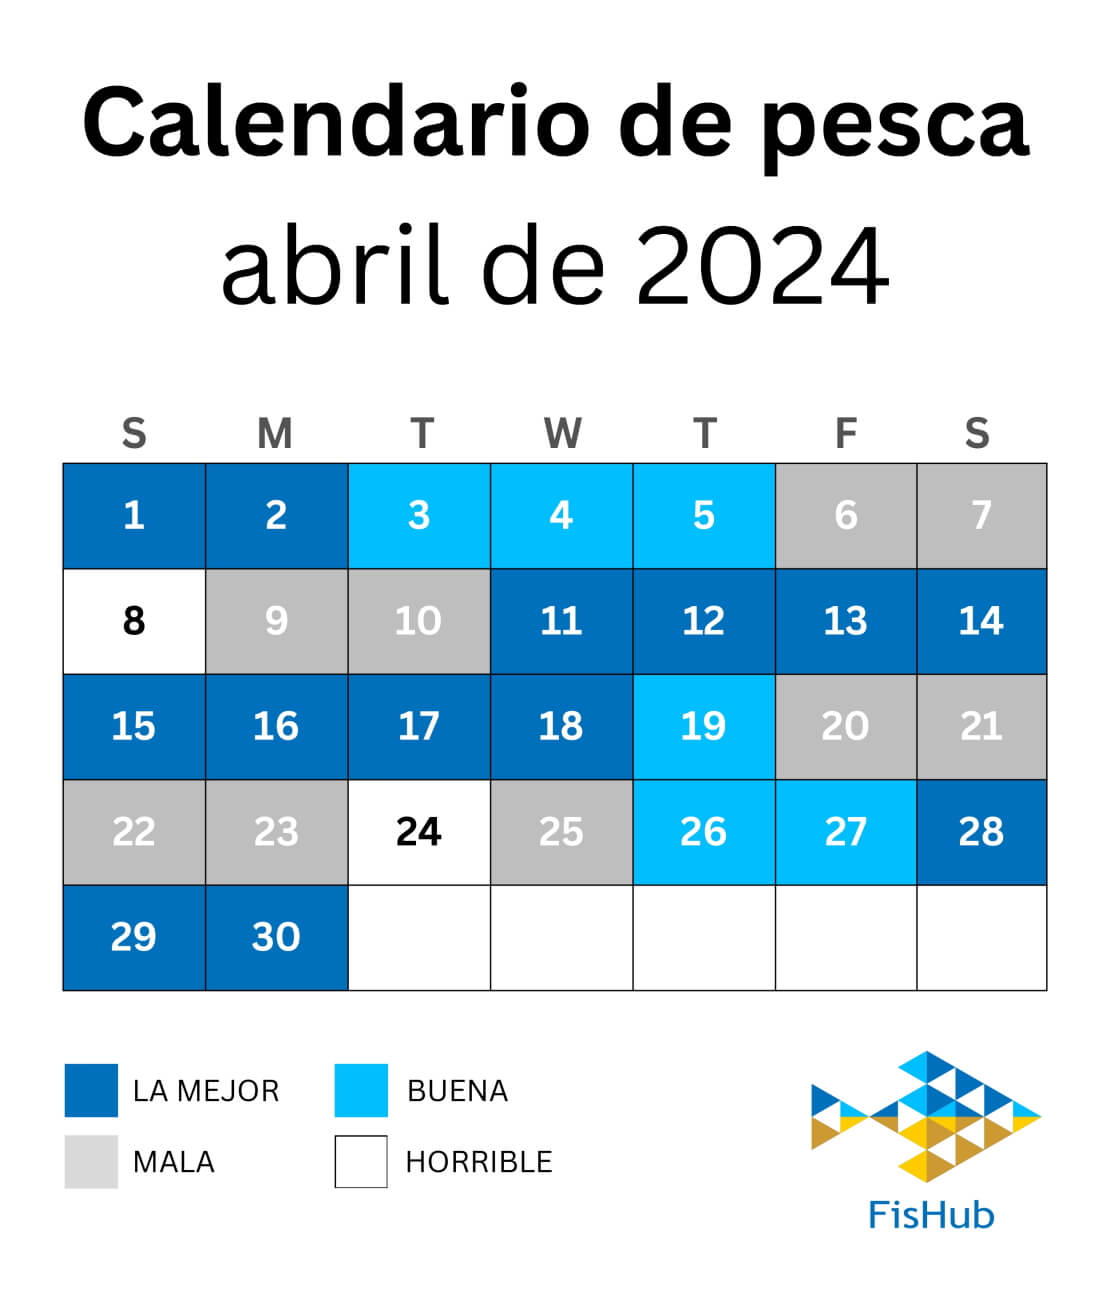 Calendario de pescadores para abril de 2024